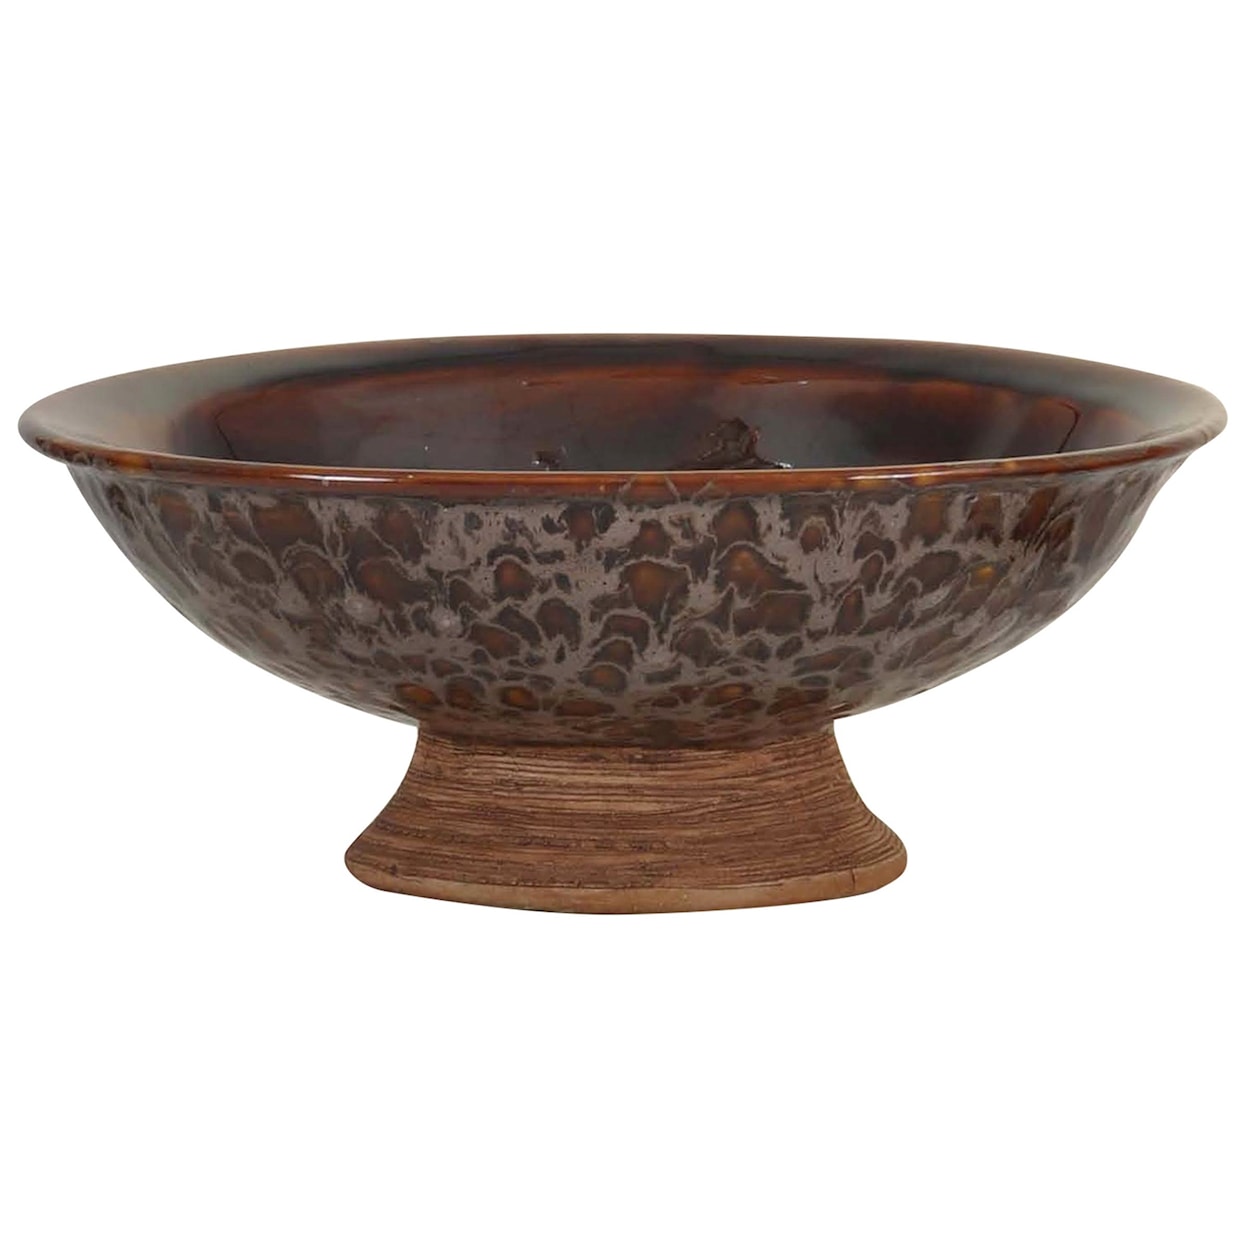 StyleCraft Accessories Ceramic Bowl